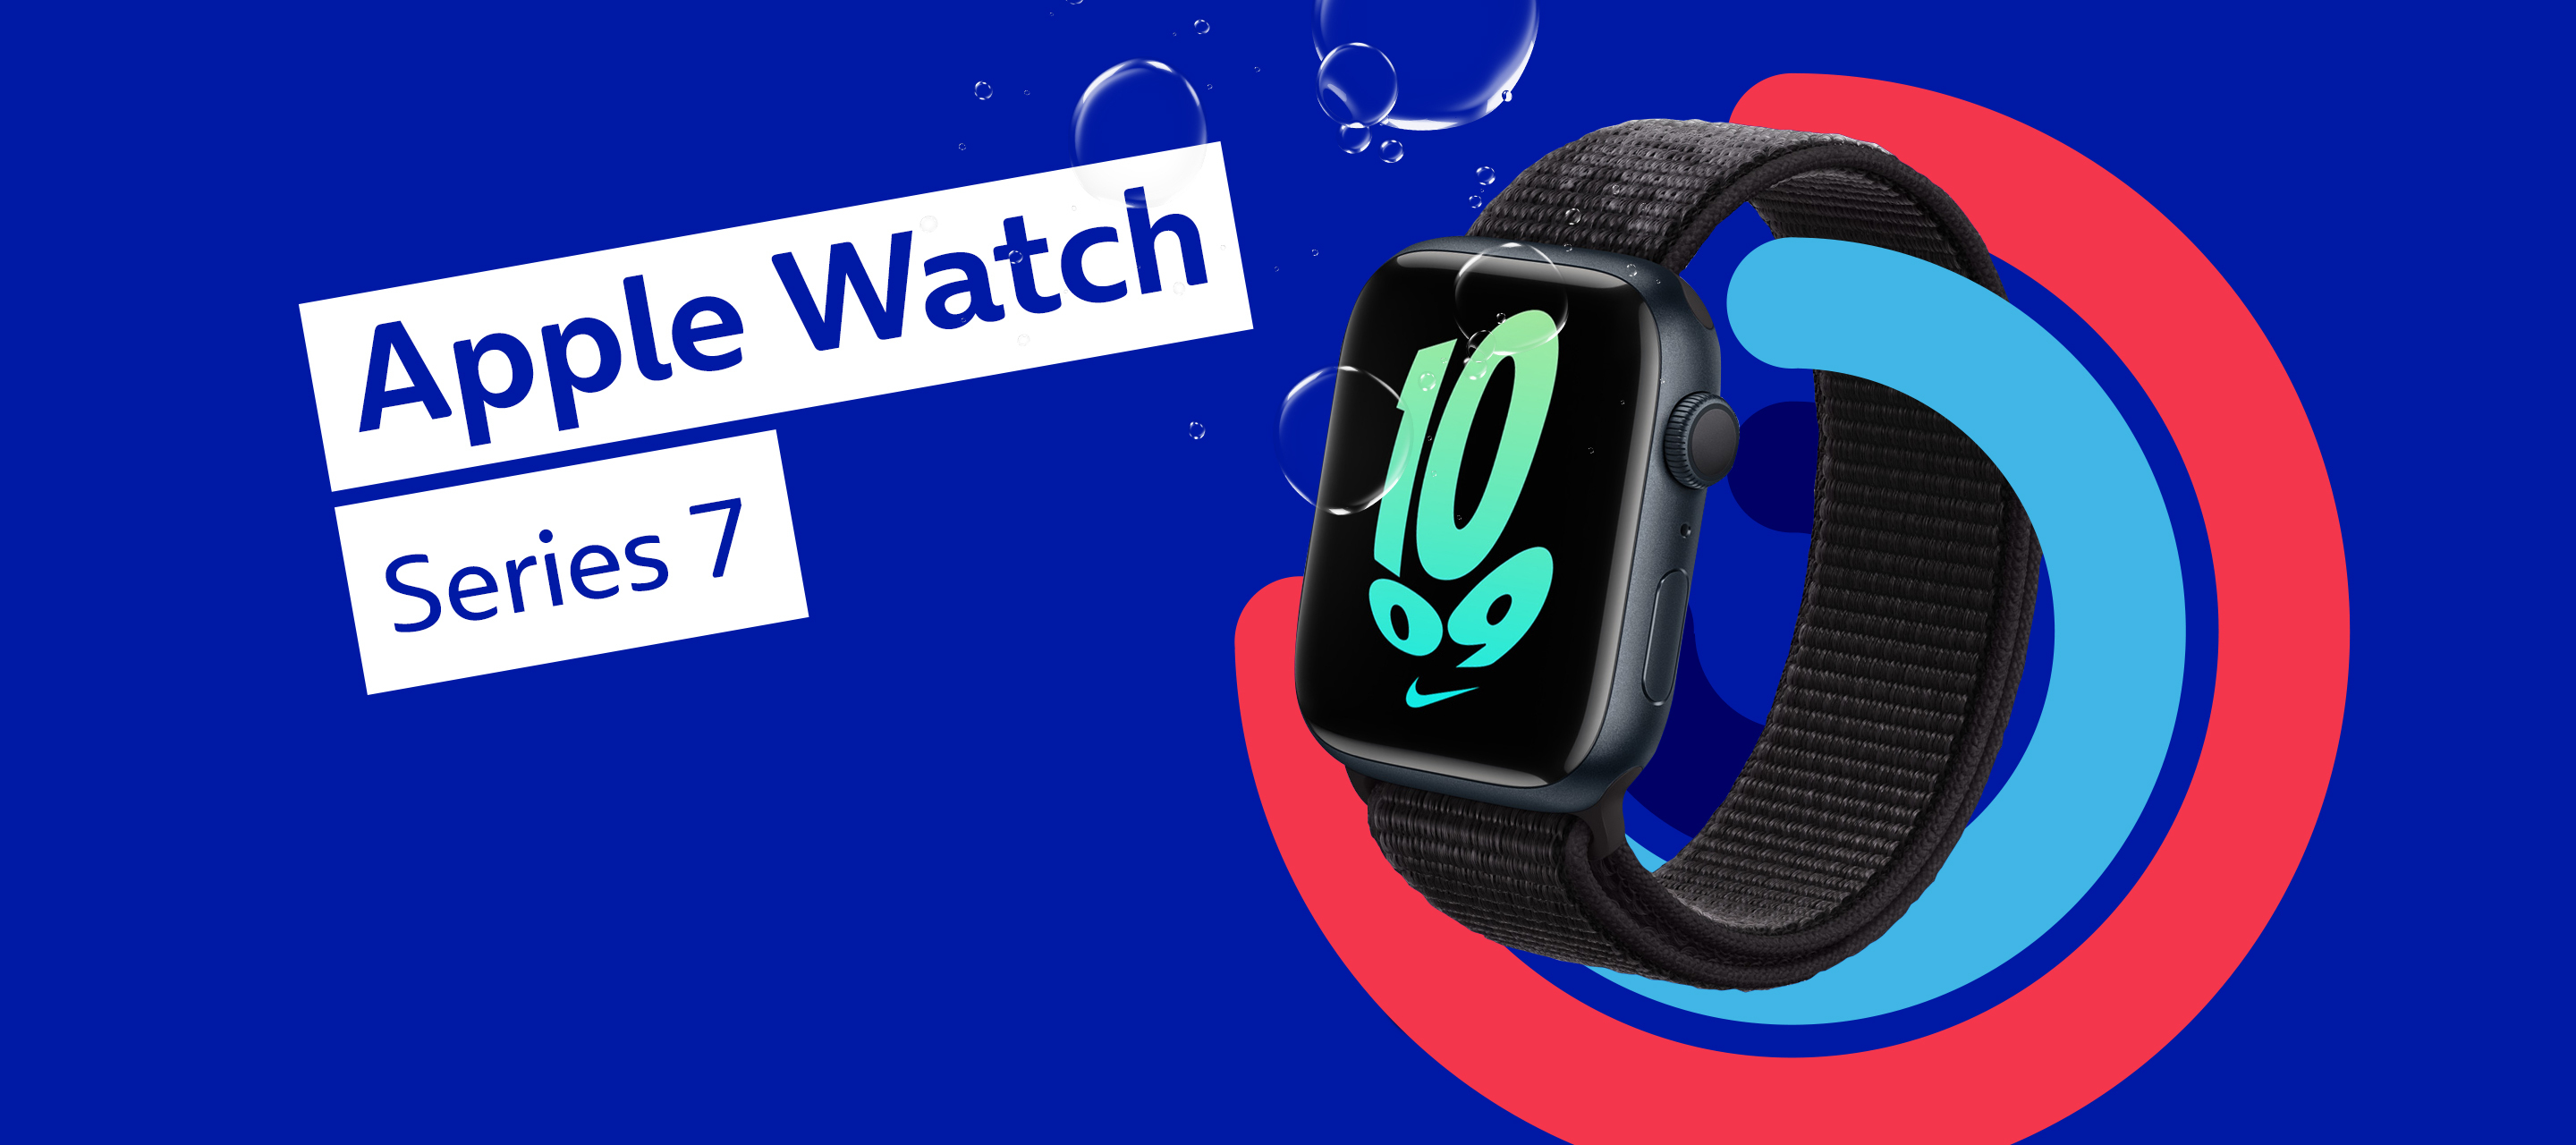 Alles wichtige am Handgelenk: Die Apple Watch Series 7 bei O₂